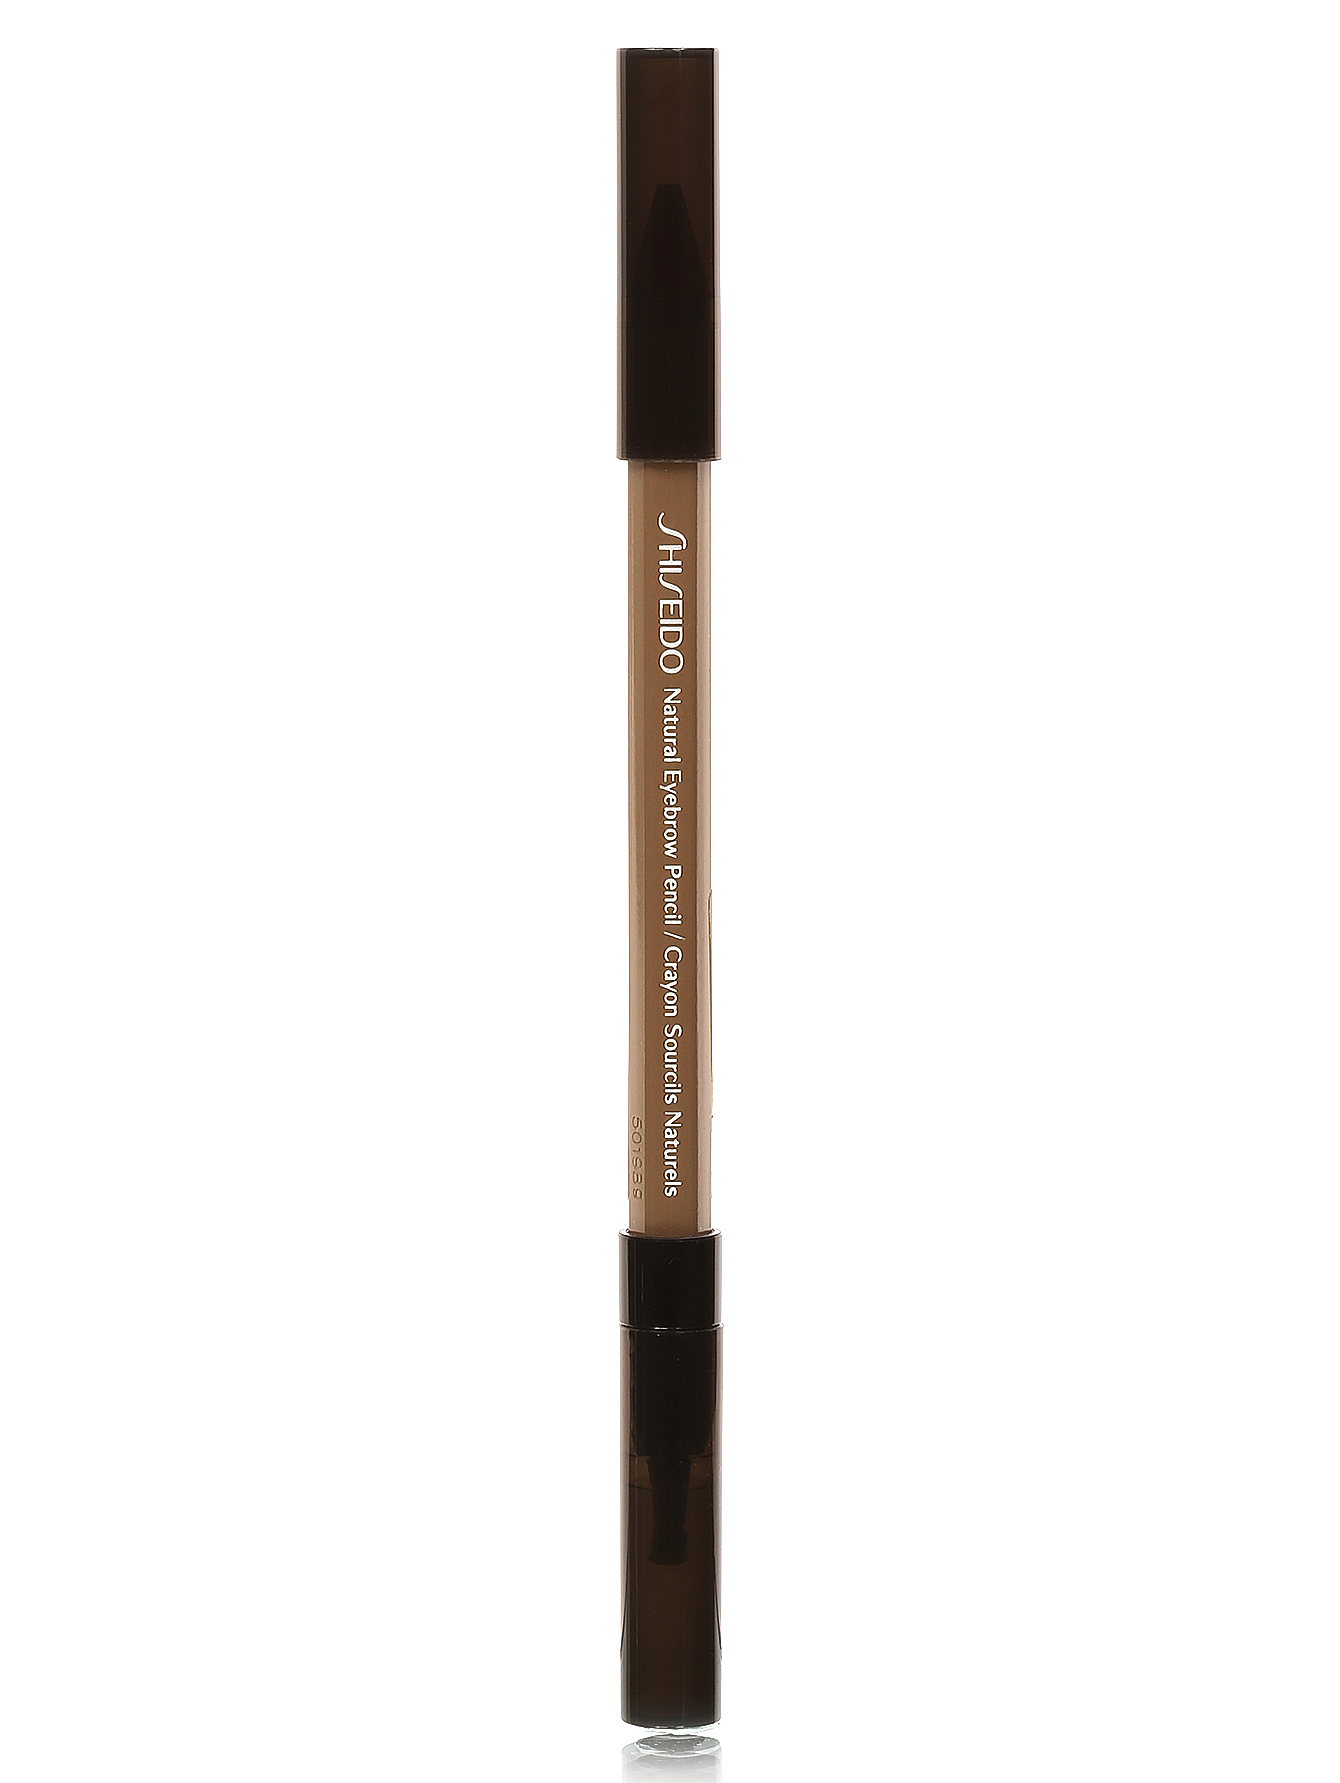 Натуральный карандаш для бровей - BR704, Eyebrow Pencil - Модель Верх-Низ